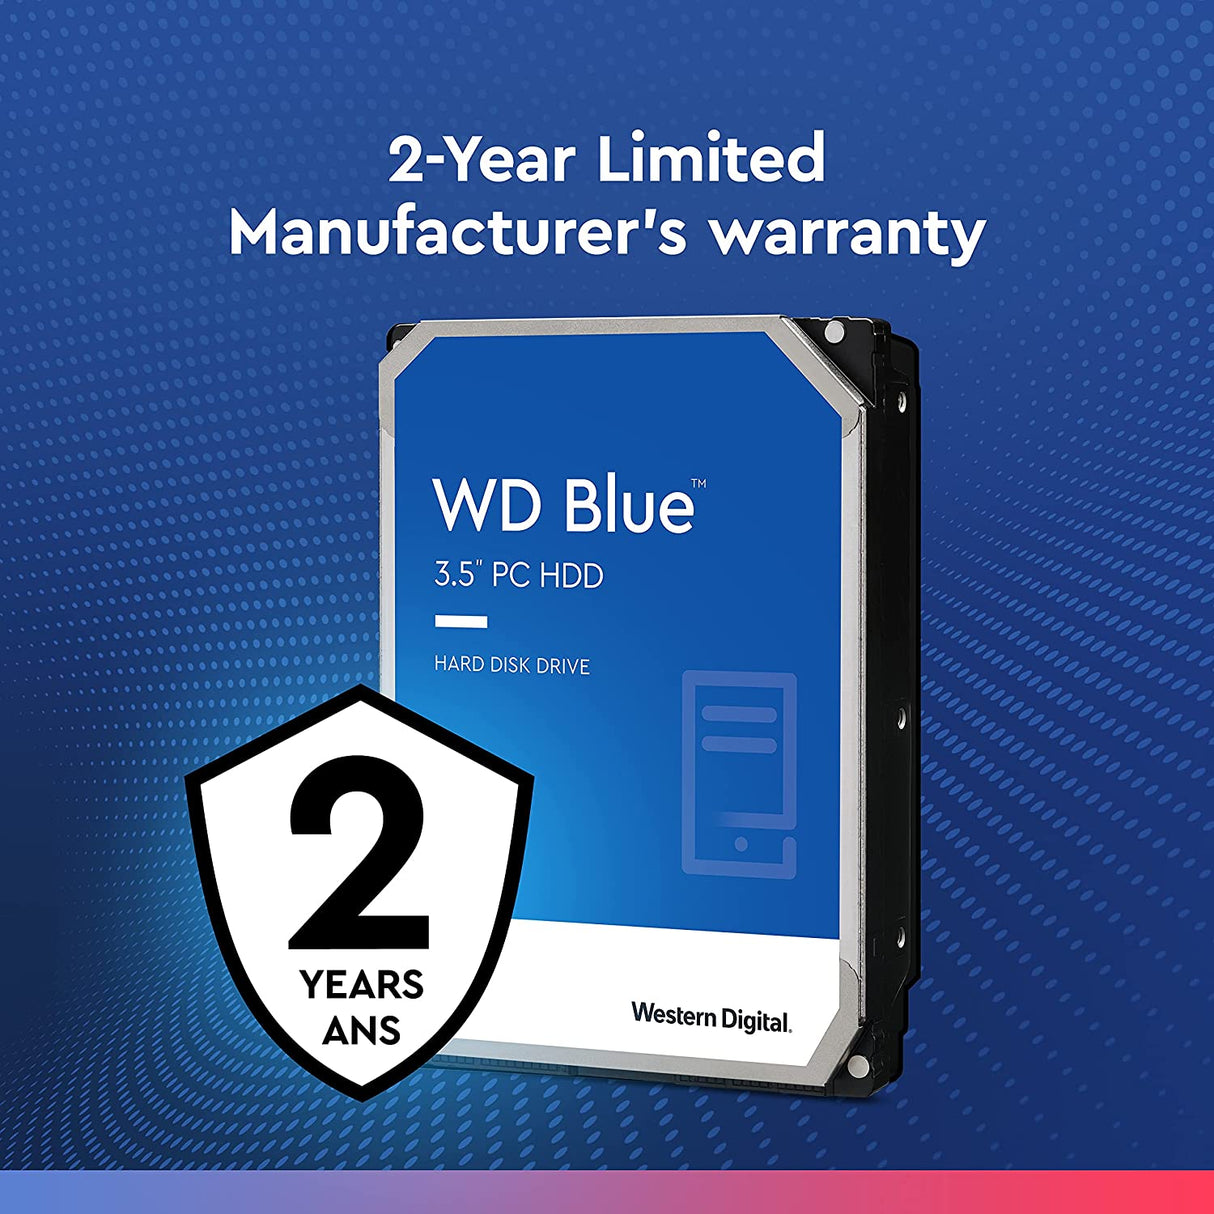 Western Digital 2TB WD Blue PC Internal Hard Drive - 7200 RPM Class, SATA 6 Gb/s, 256 MB Cache, 3.5" - WD20EZBX 2TB 7200 RPM Hard Drive